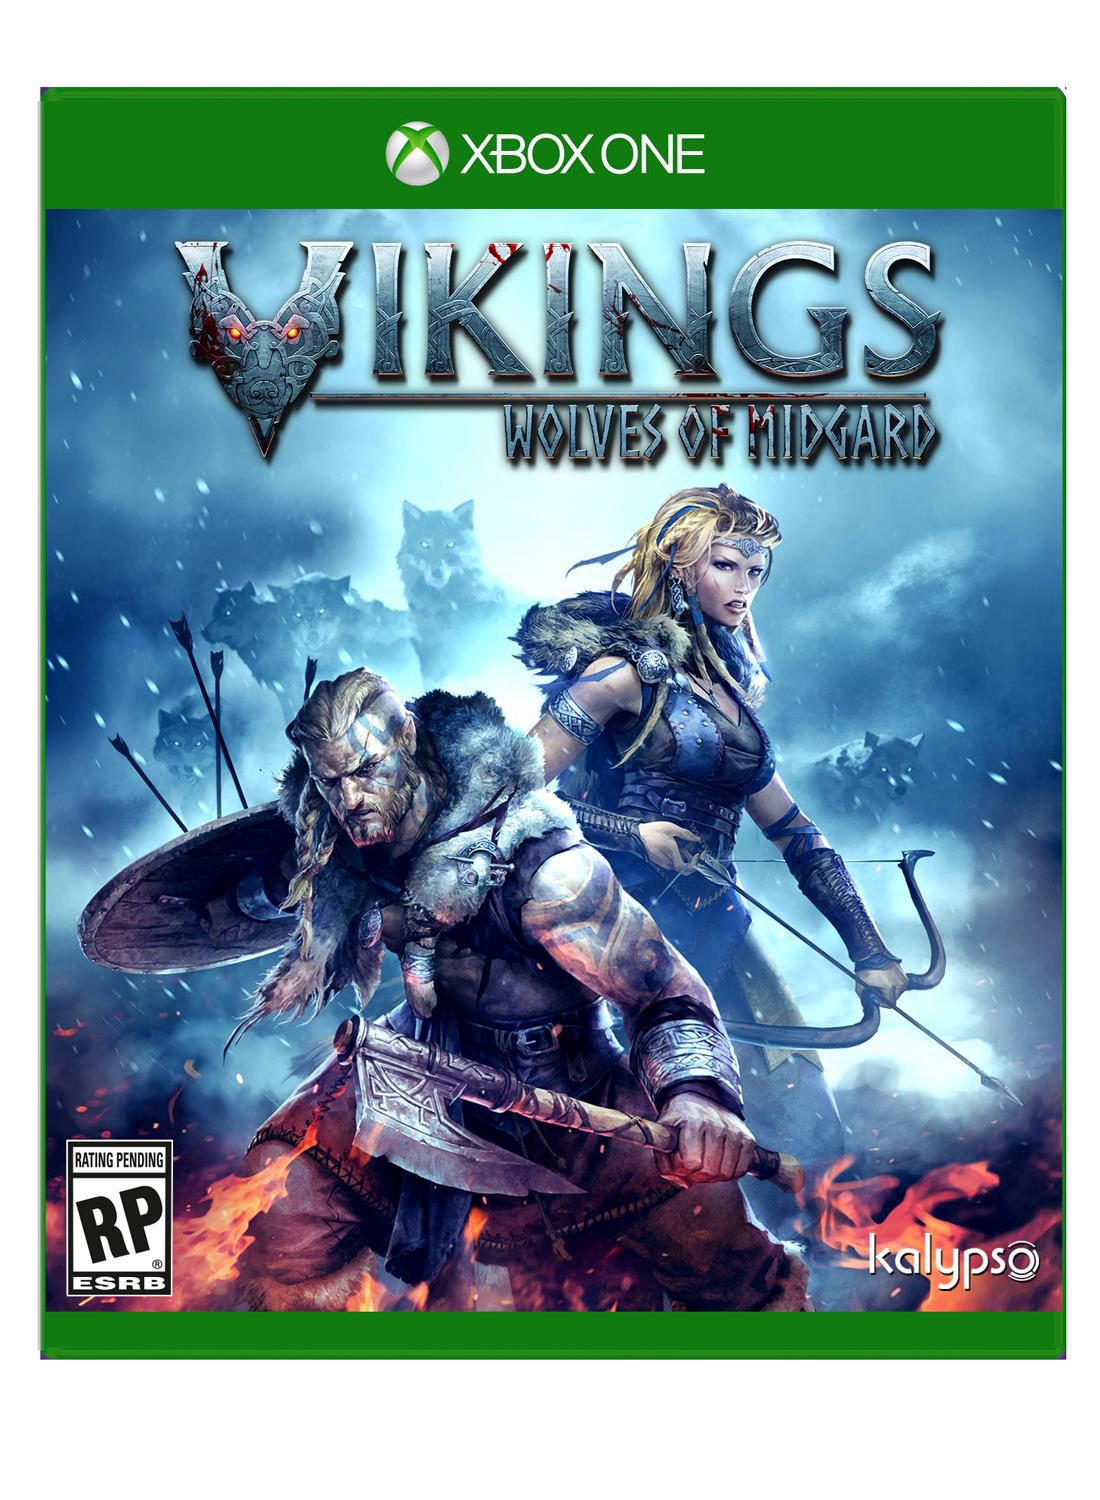 Vikings Wolves of Midgard (Xbox One) Kalypso, 848466000680 - image 3 of 5